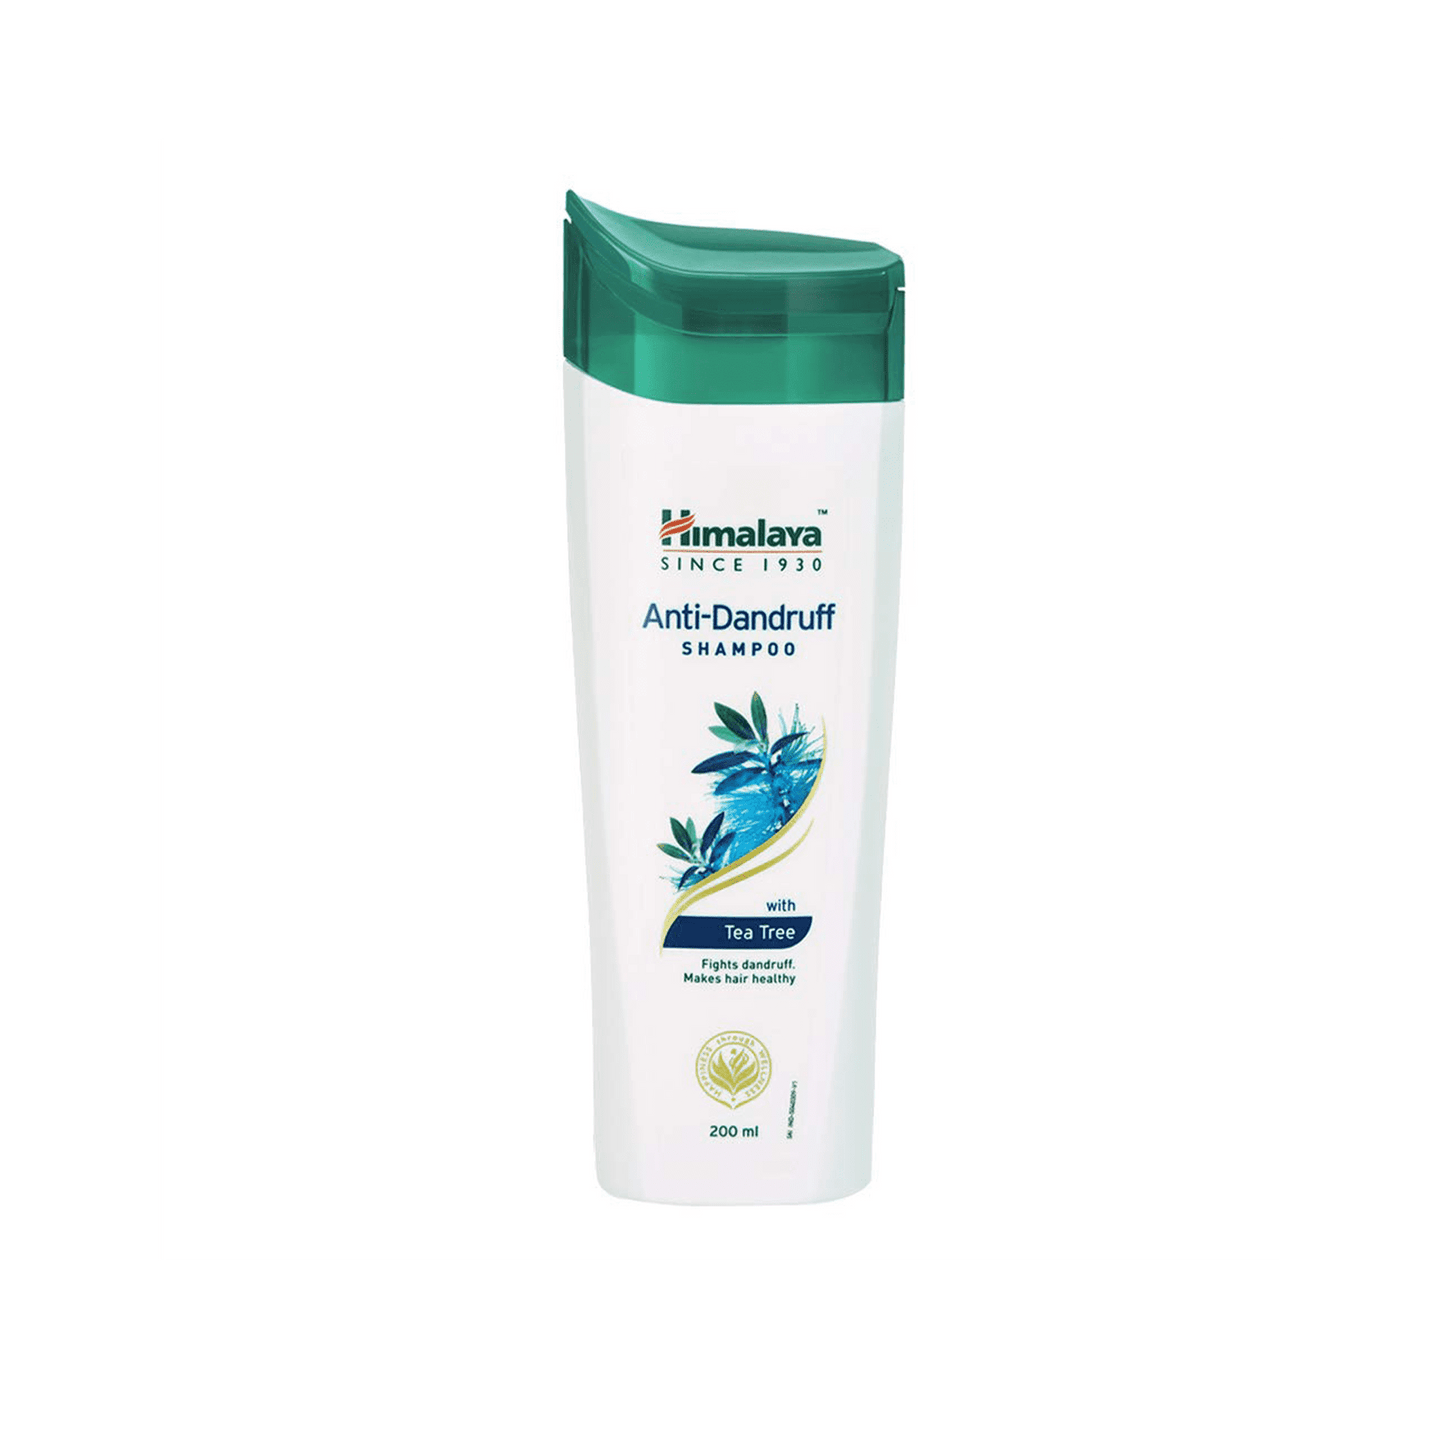 Himalaya Anti-Dandruff Shampoo.